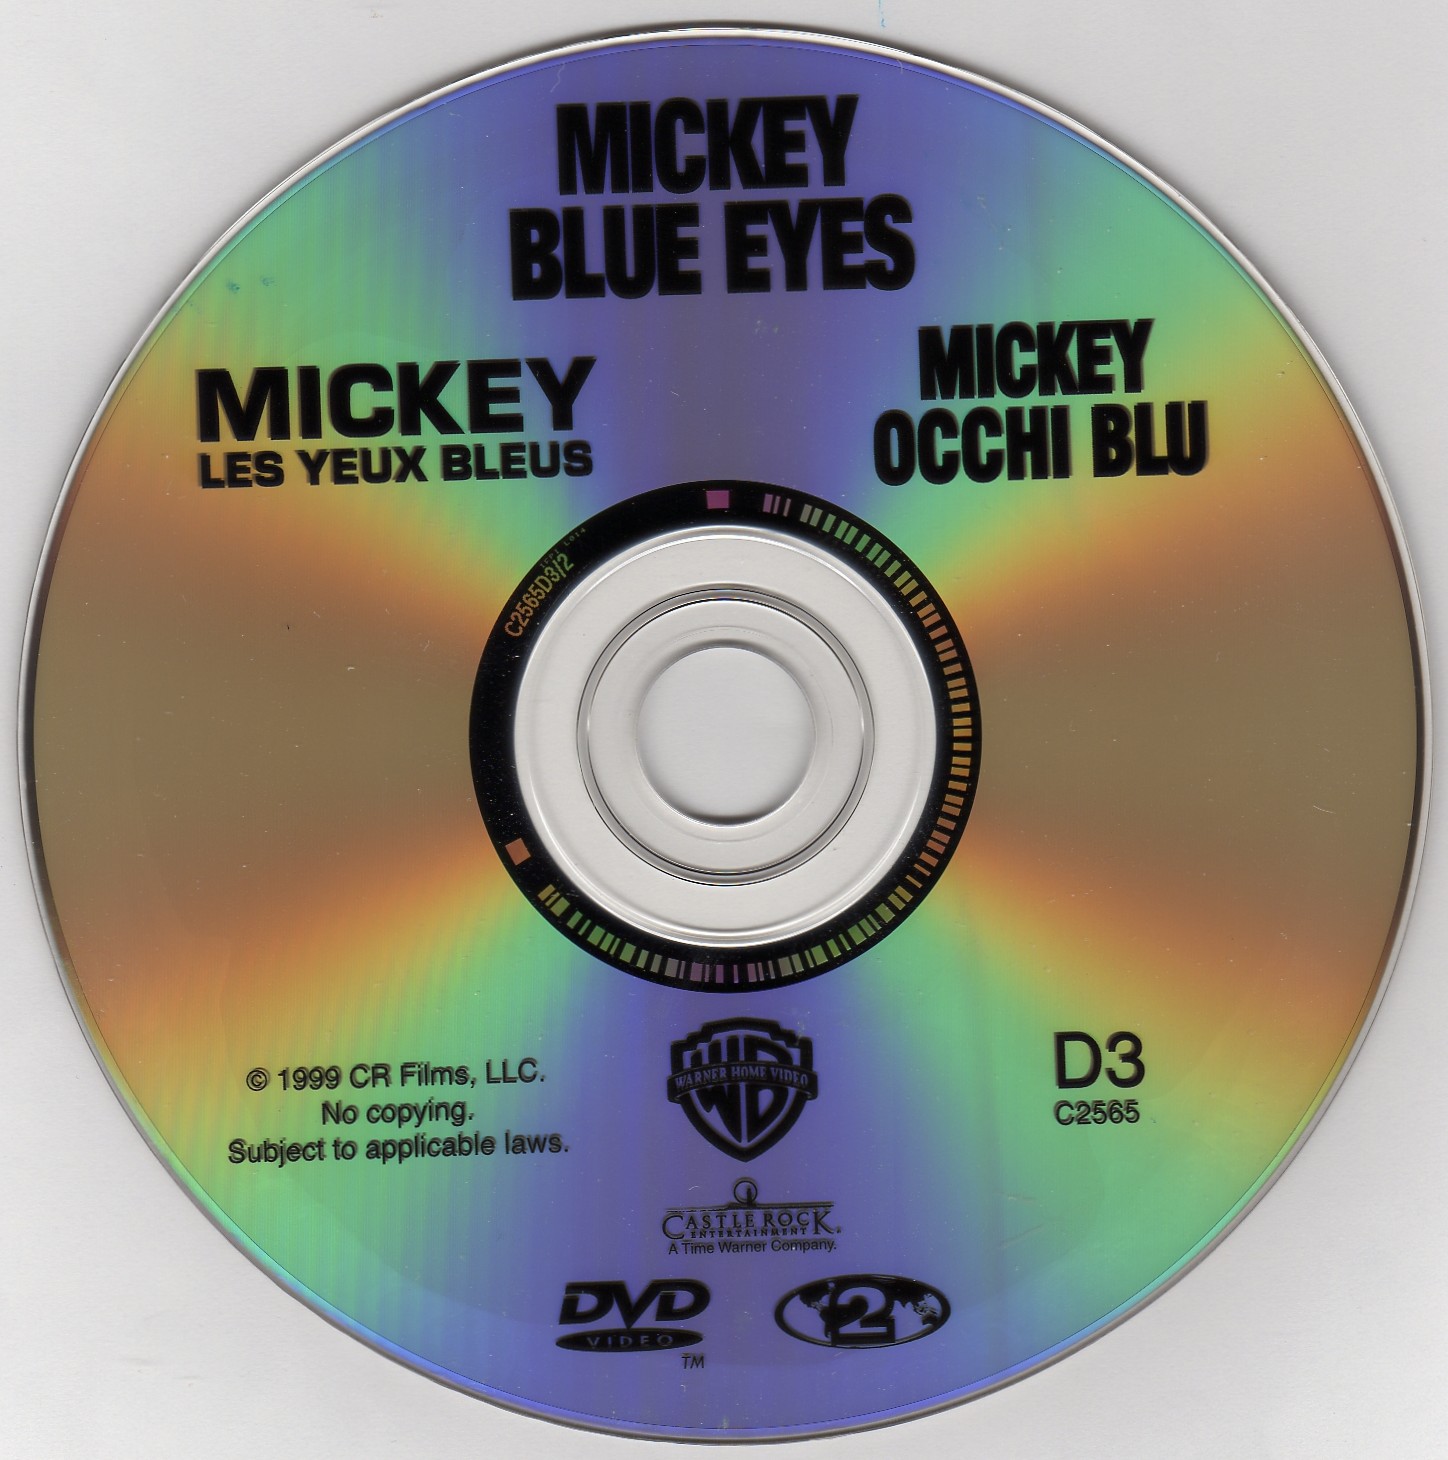 Mickey les yeux bleus